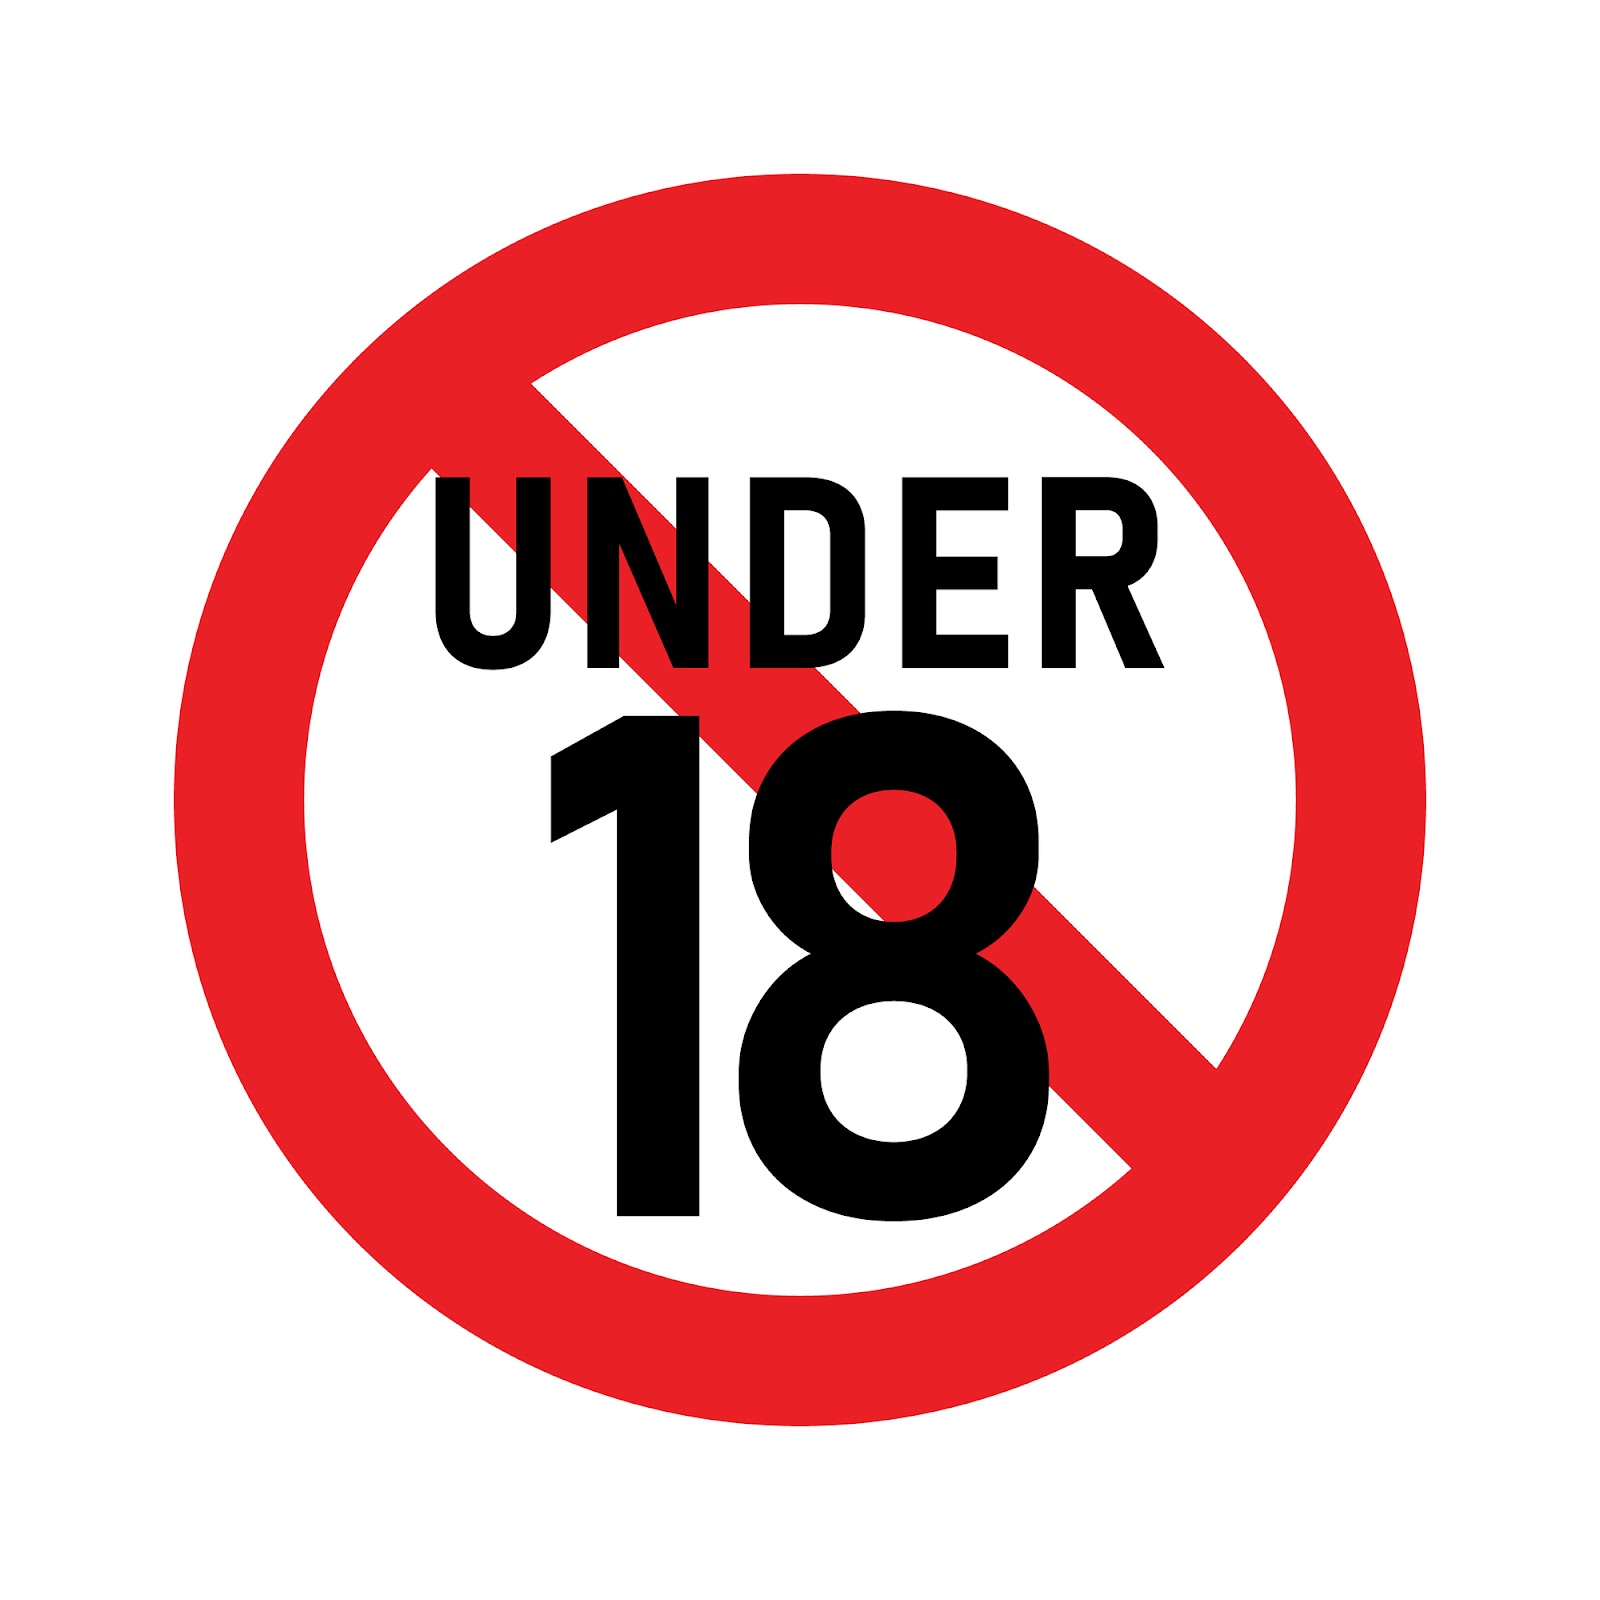 ルール1：18歳未満は利用禁止であること